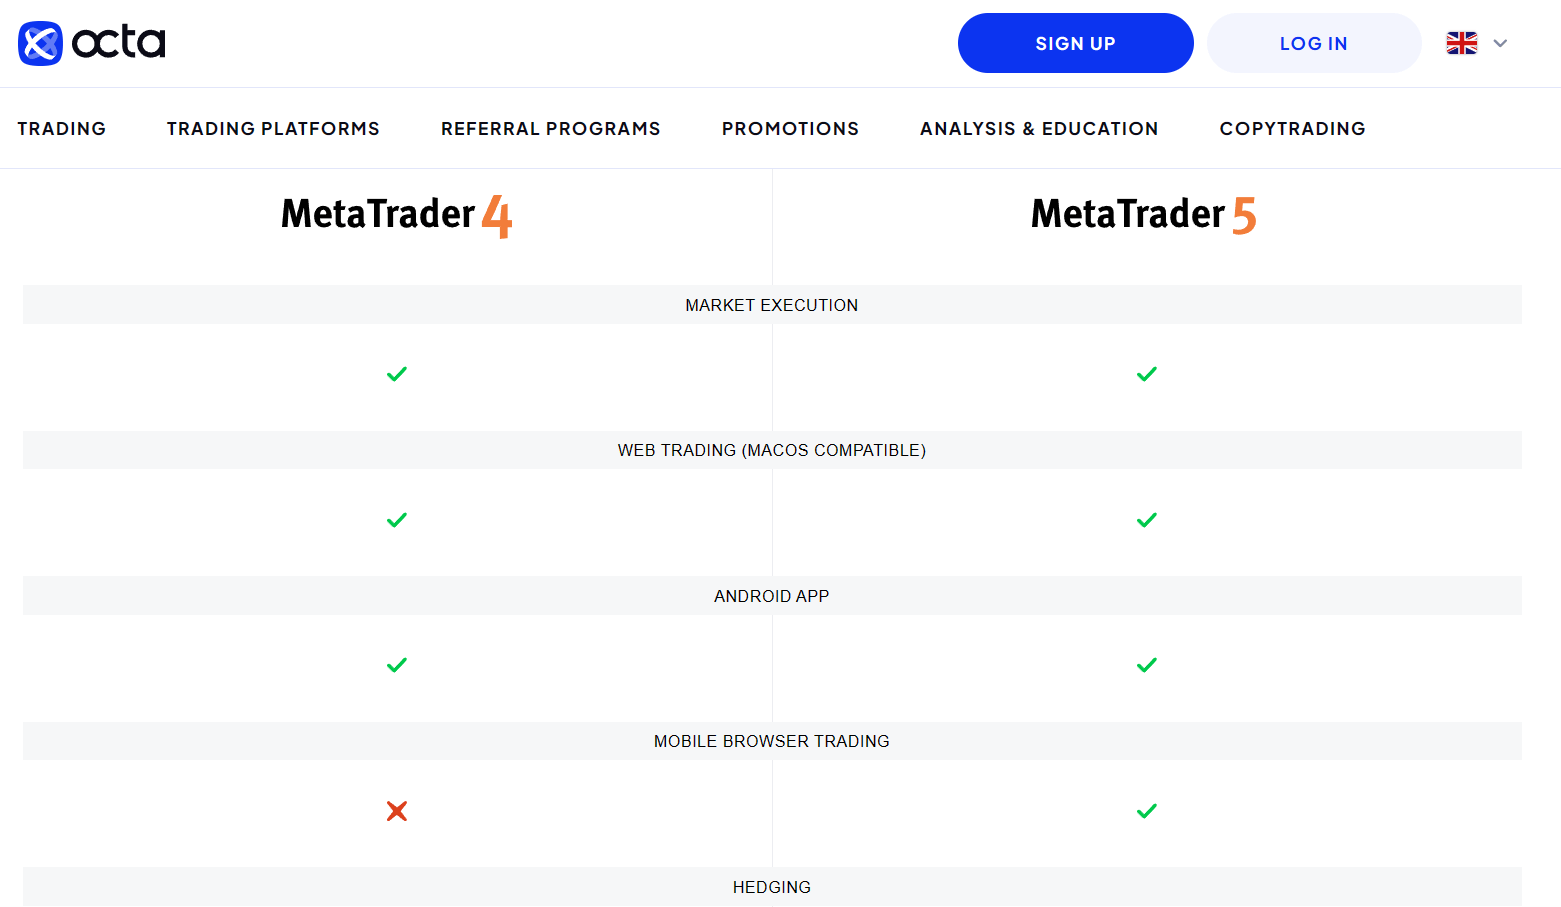 Octa has 3 trading platforms